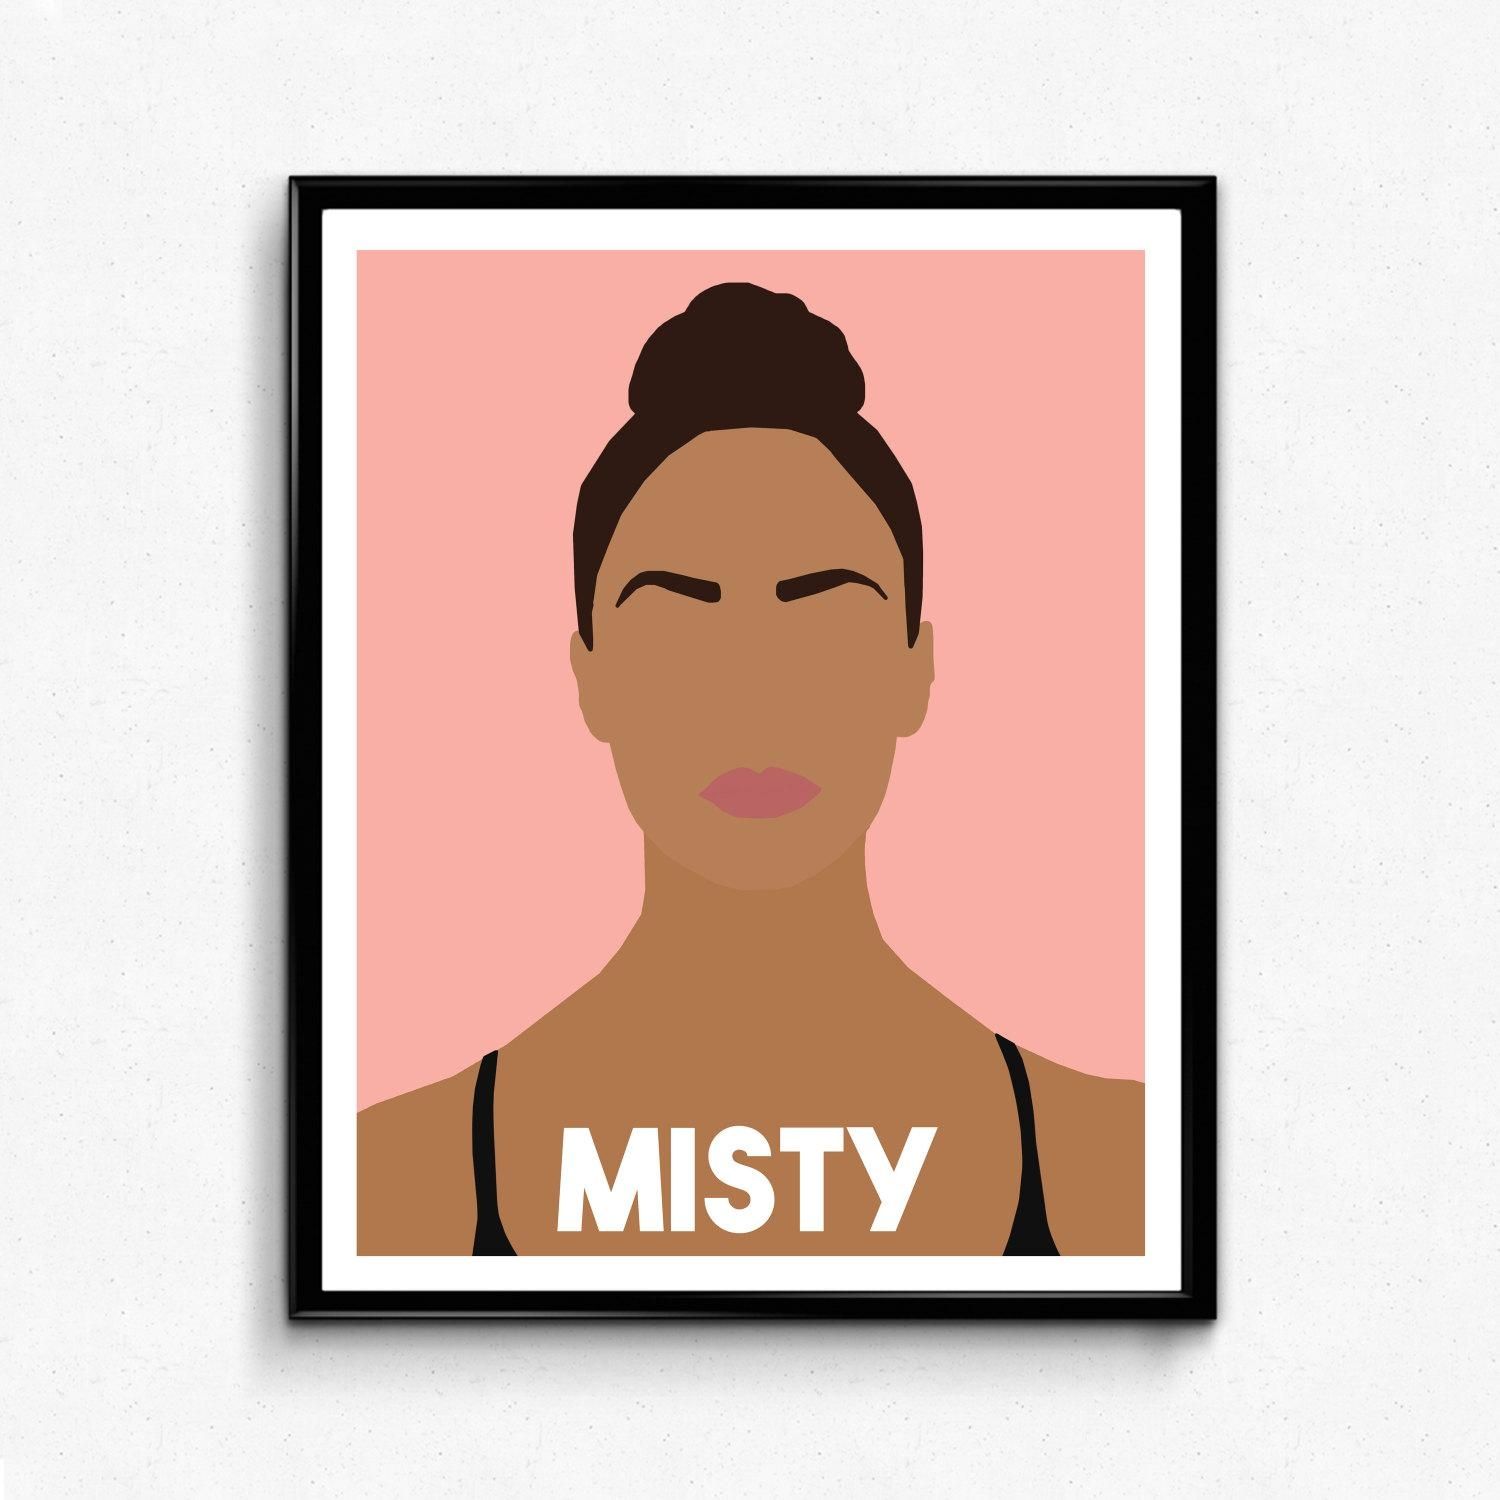 Misty Copeland Feminist Poster Feminist Wall Art Decor Intended For Feminist Wall Art (Photo 1 of 20)